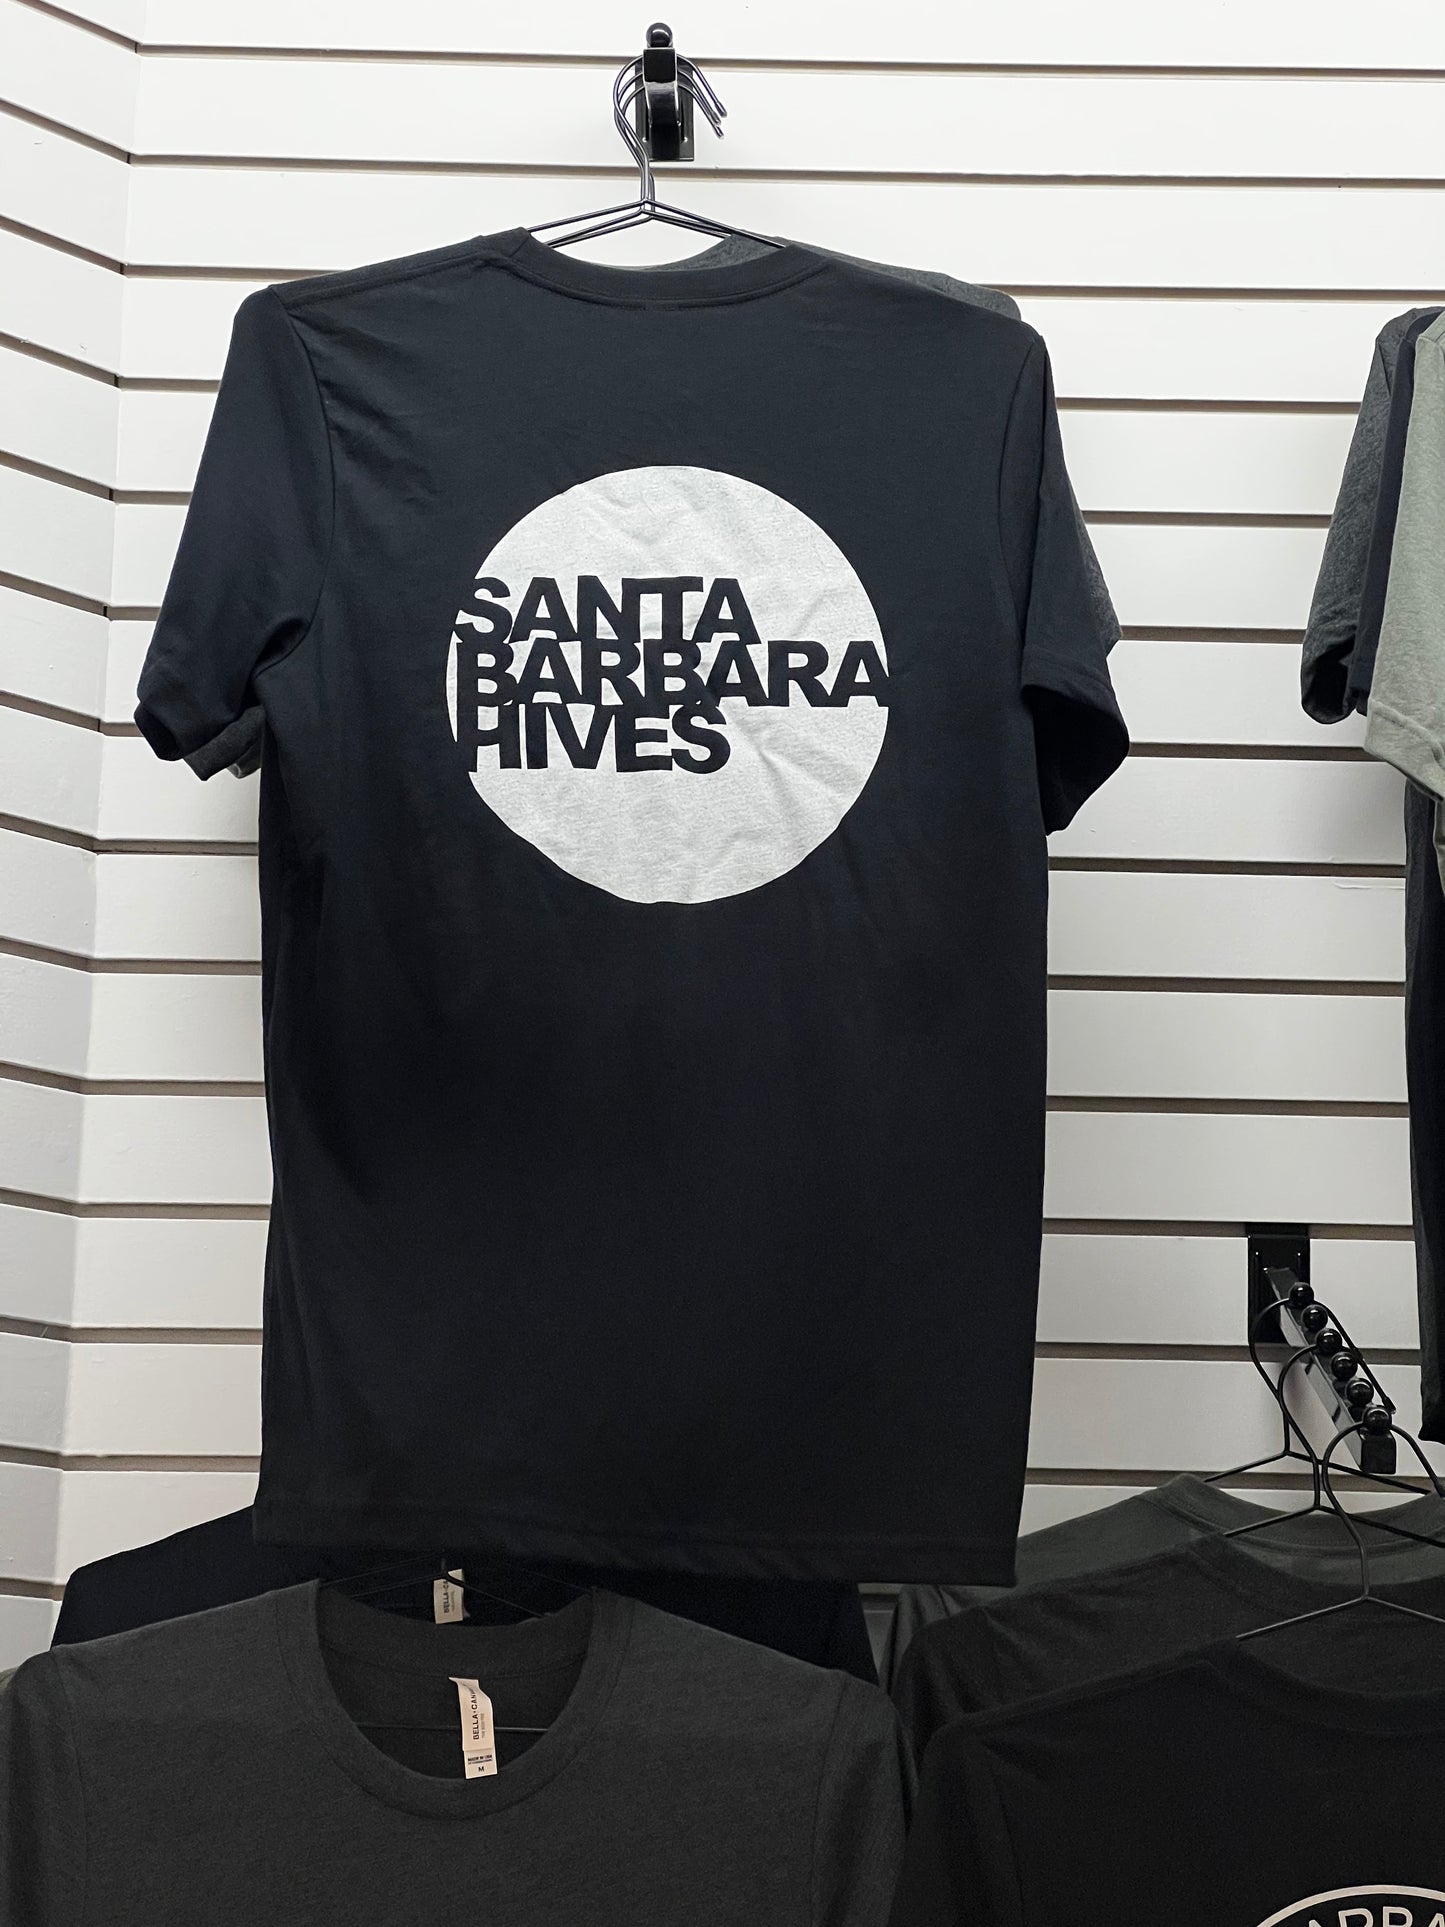 Santa Barbara Hives "Modern" T Shirt Unisex